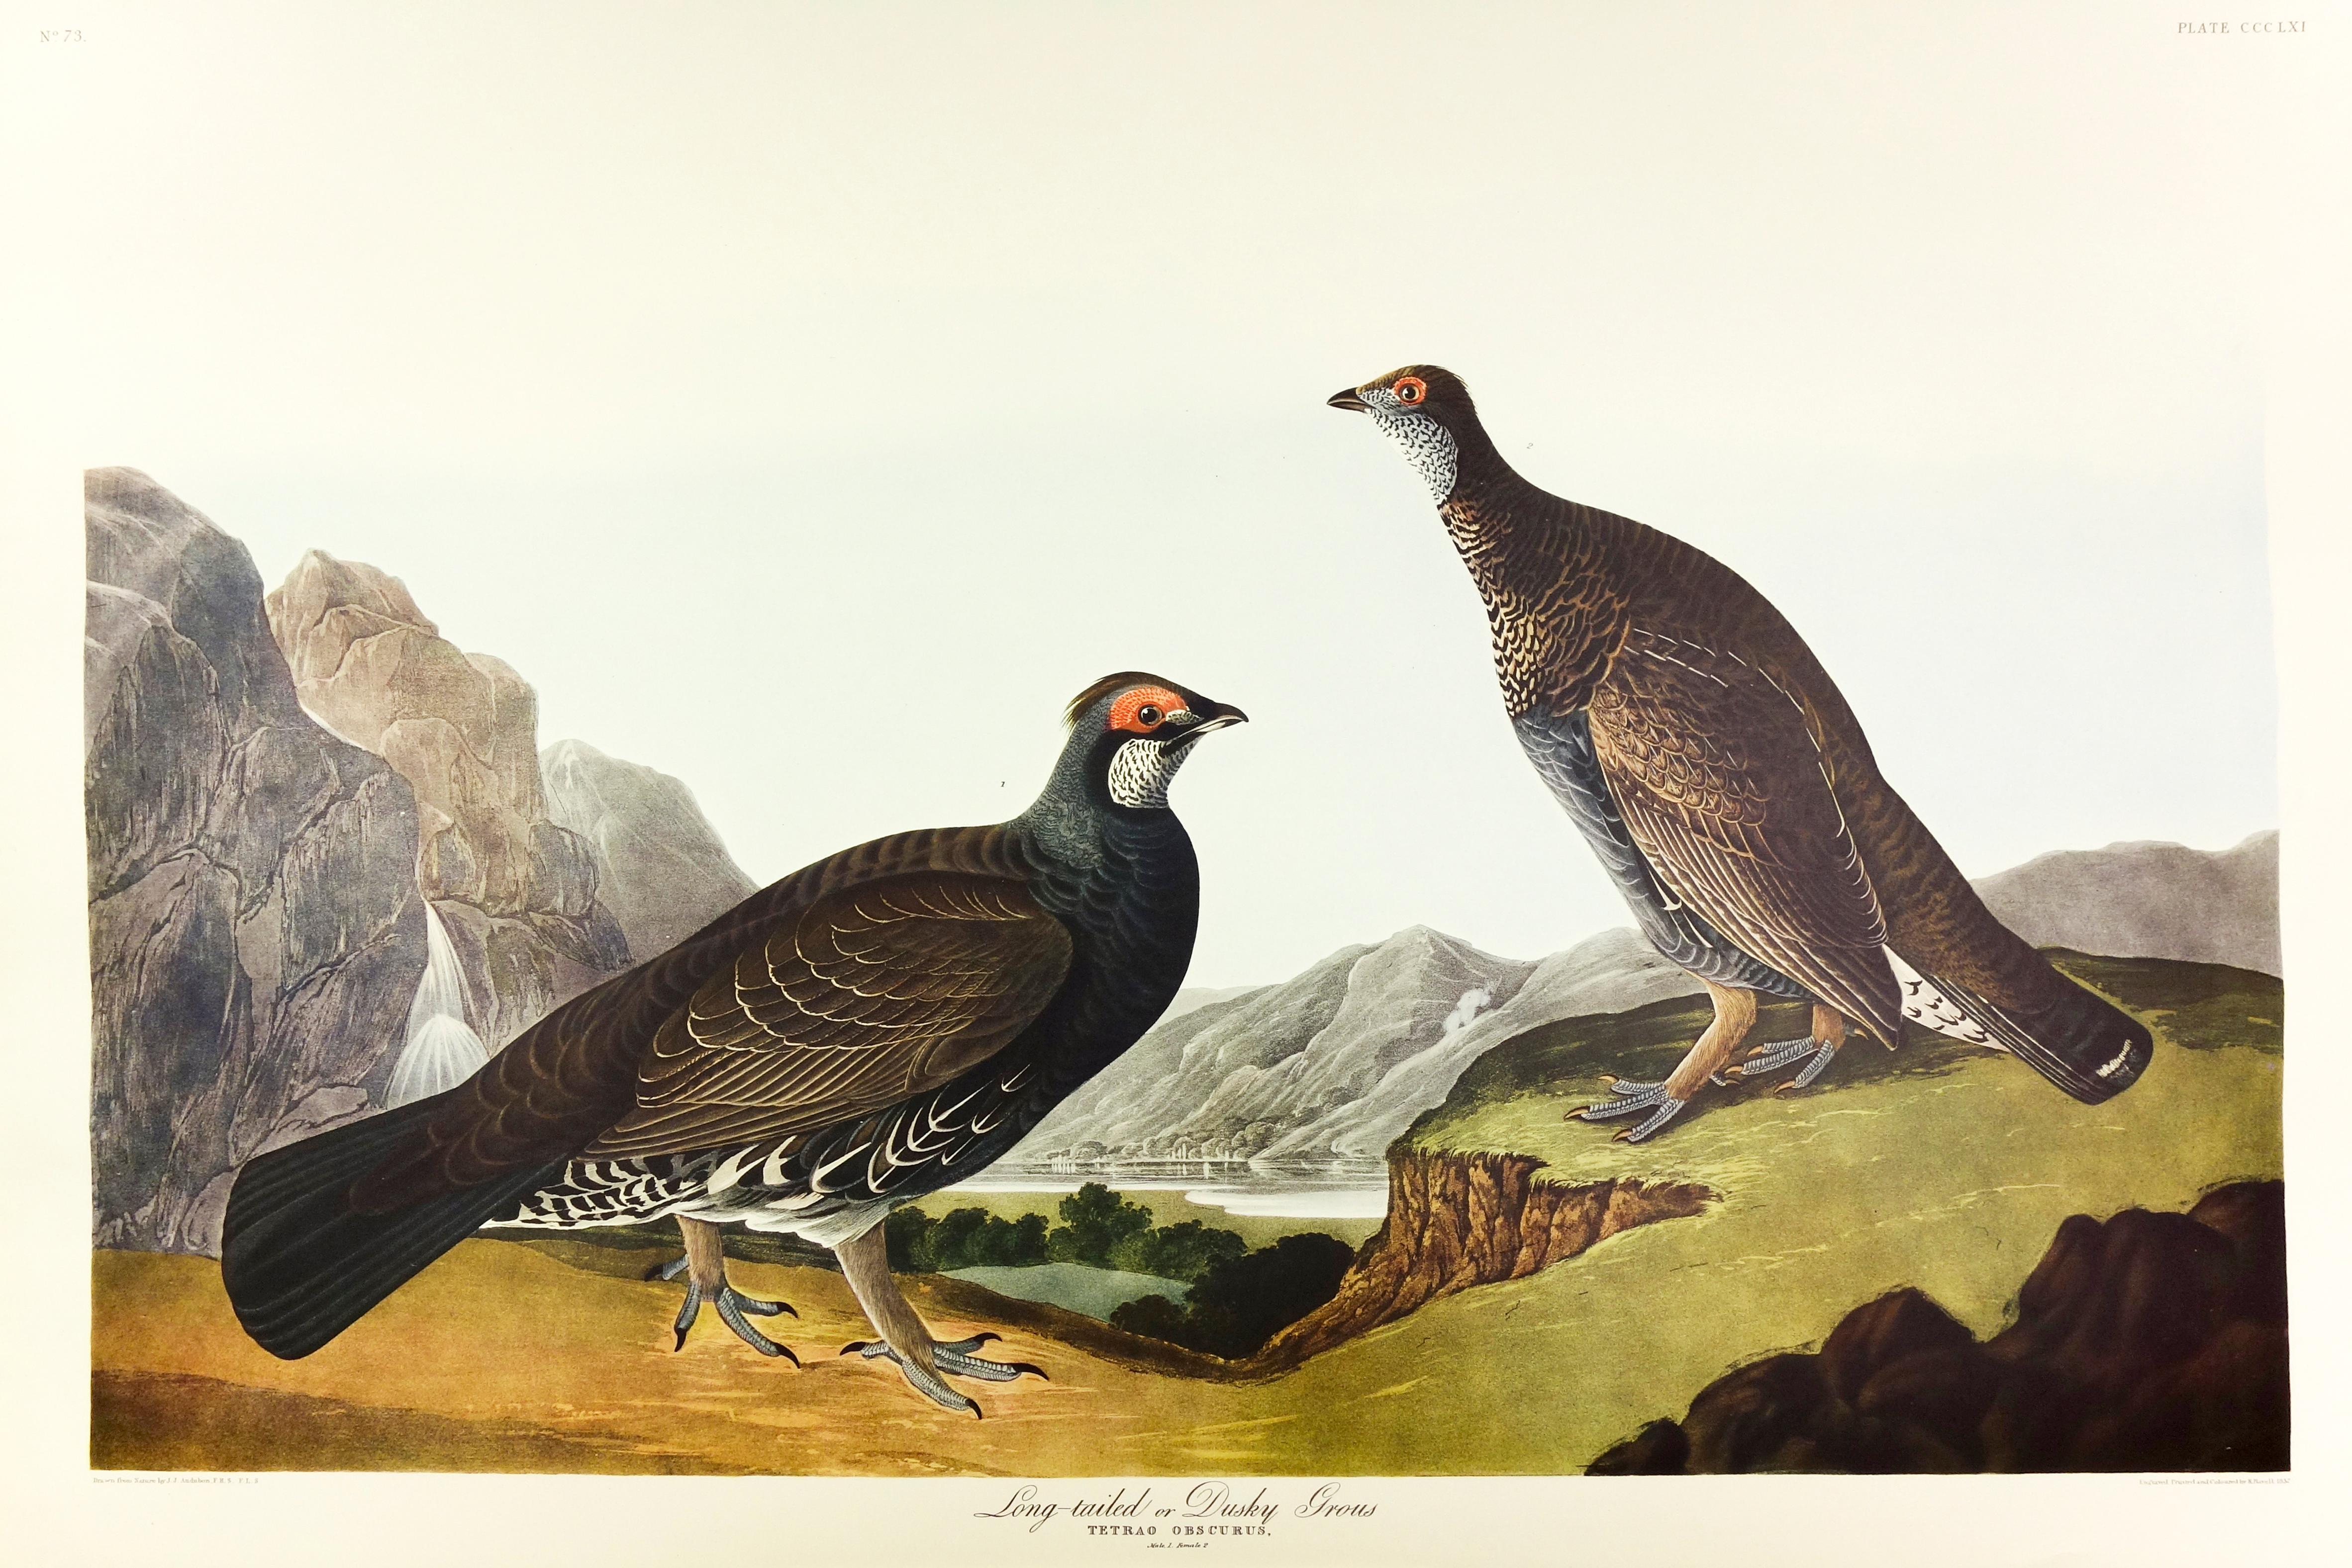 John James Audubon Animal Print - Long-Tailed or Dusky Gros